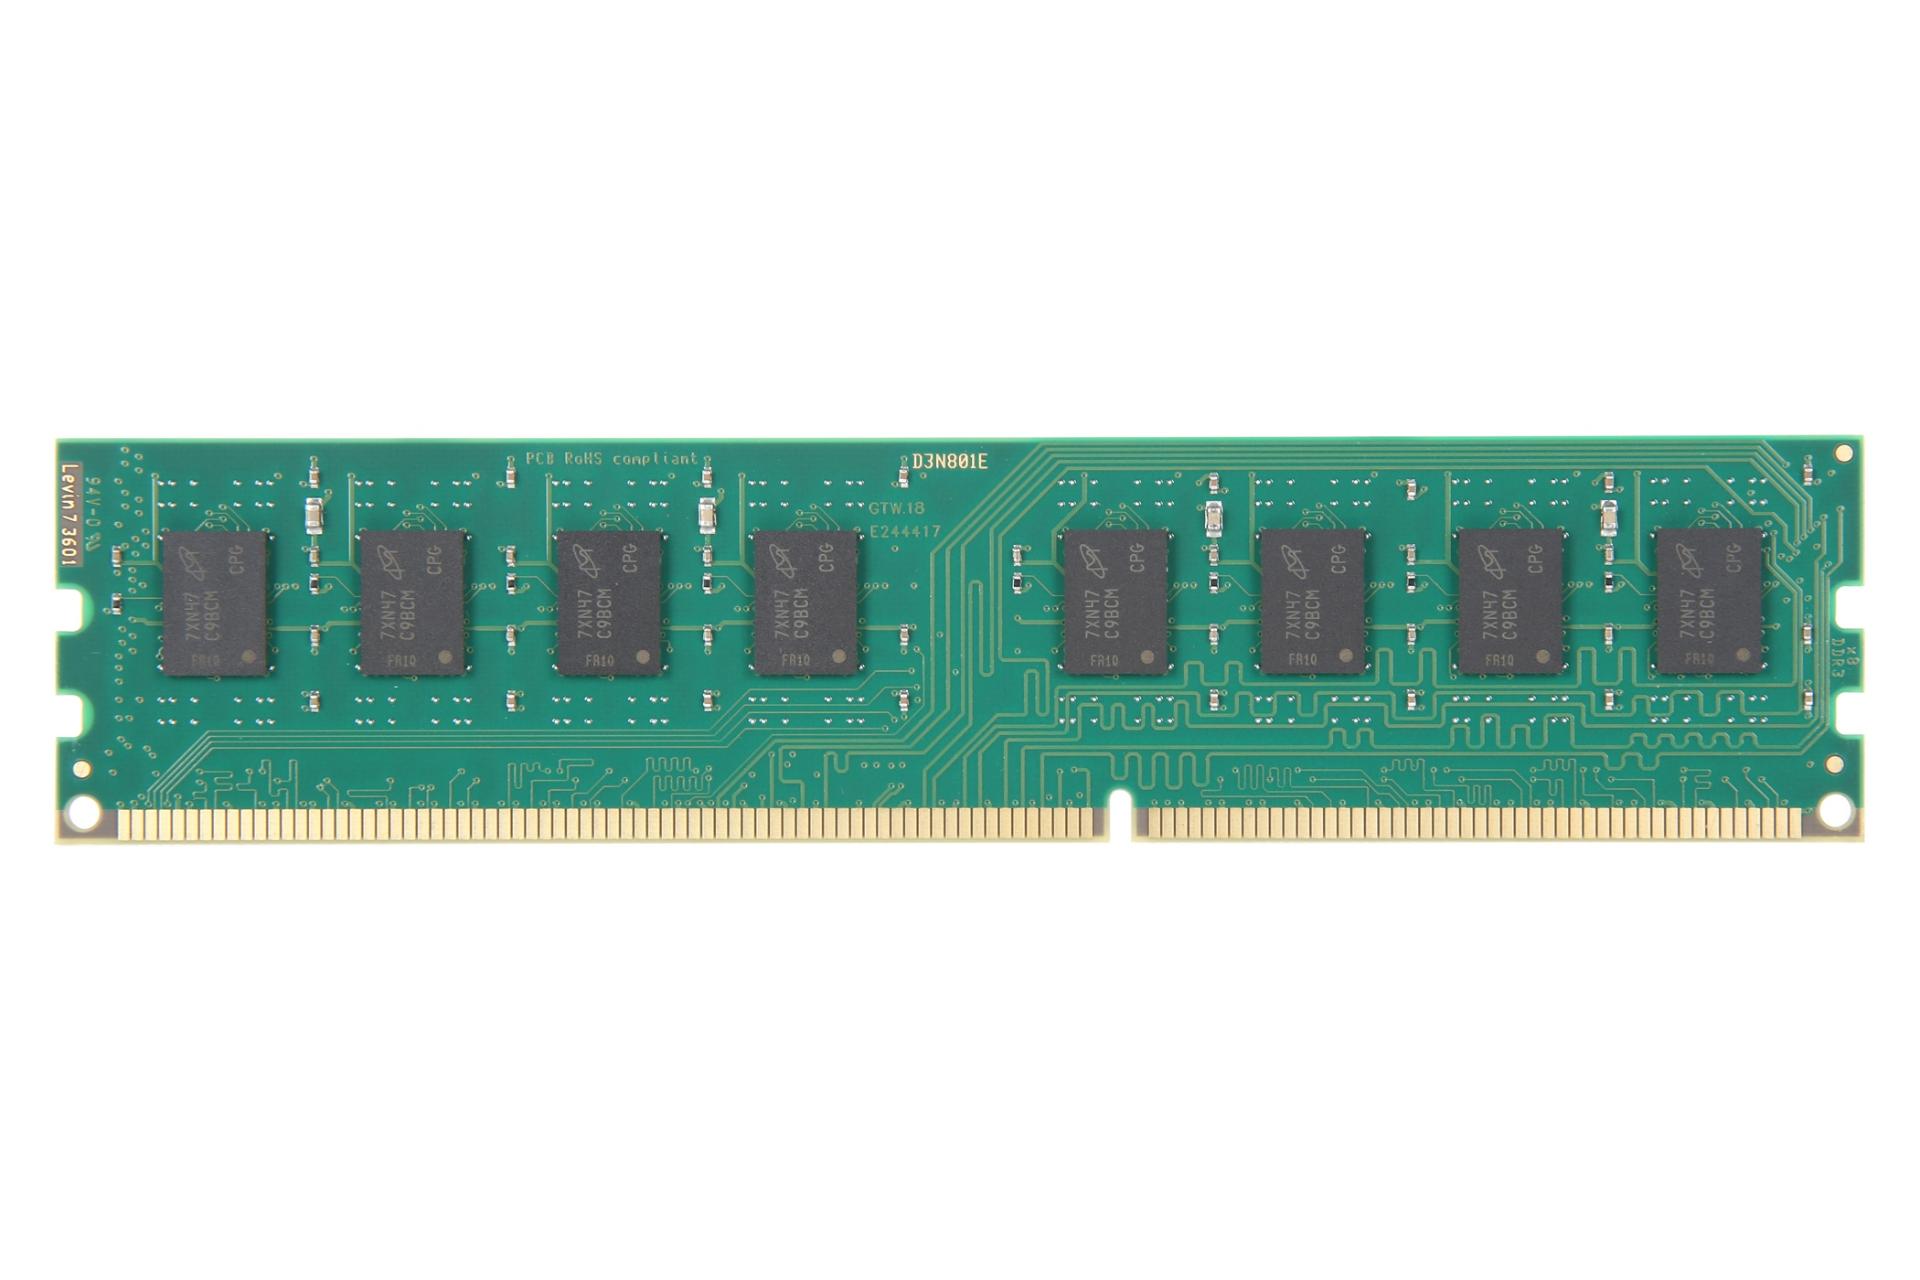 پشت رم کروشیال Crucial CT102464BD186D 8GB DDR3L-1866 CL13 ظرفیت 8 گیگابایت از نوع DDR3L-1866